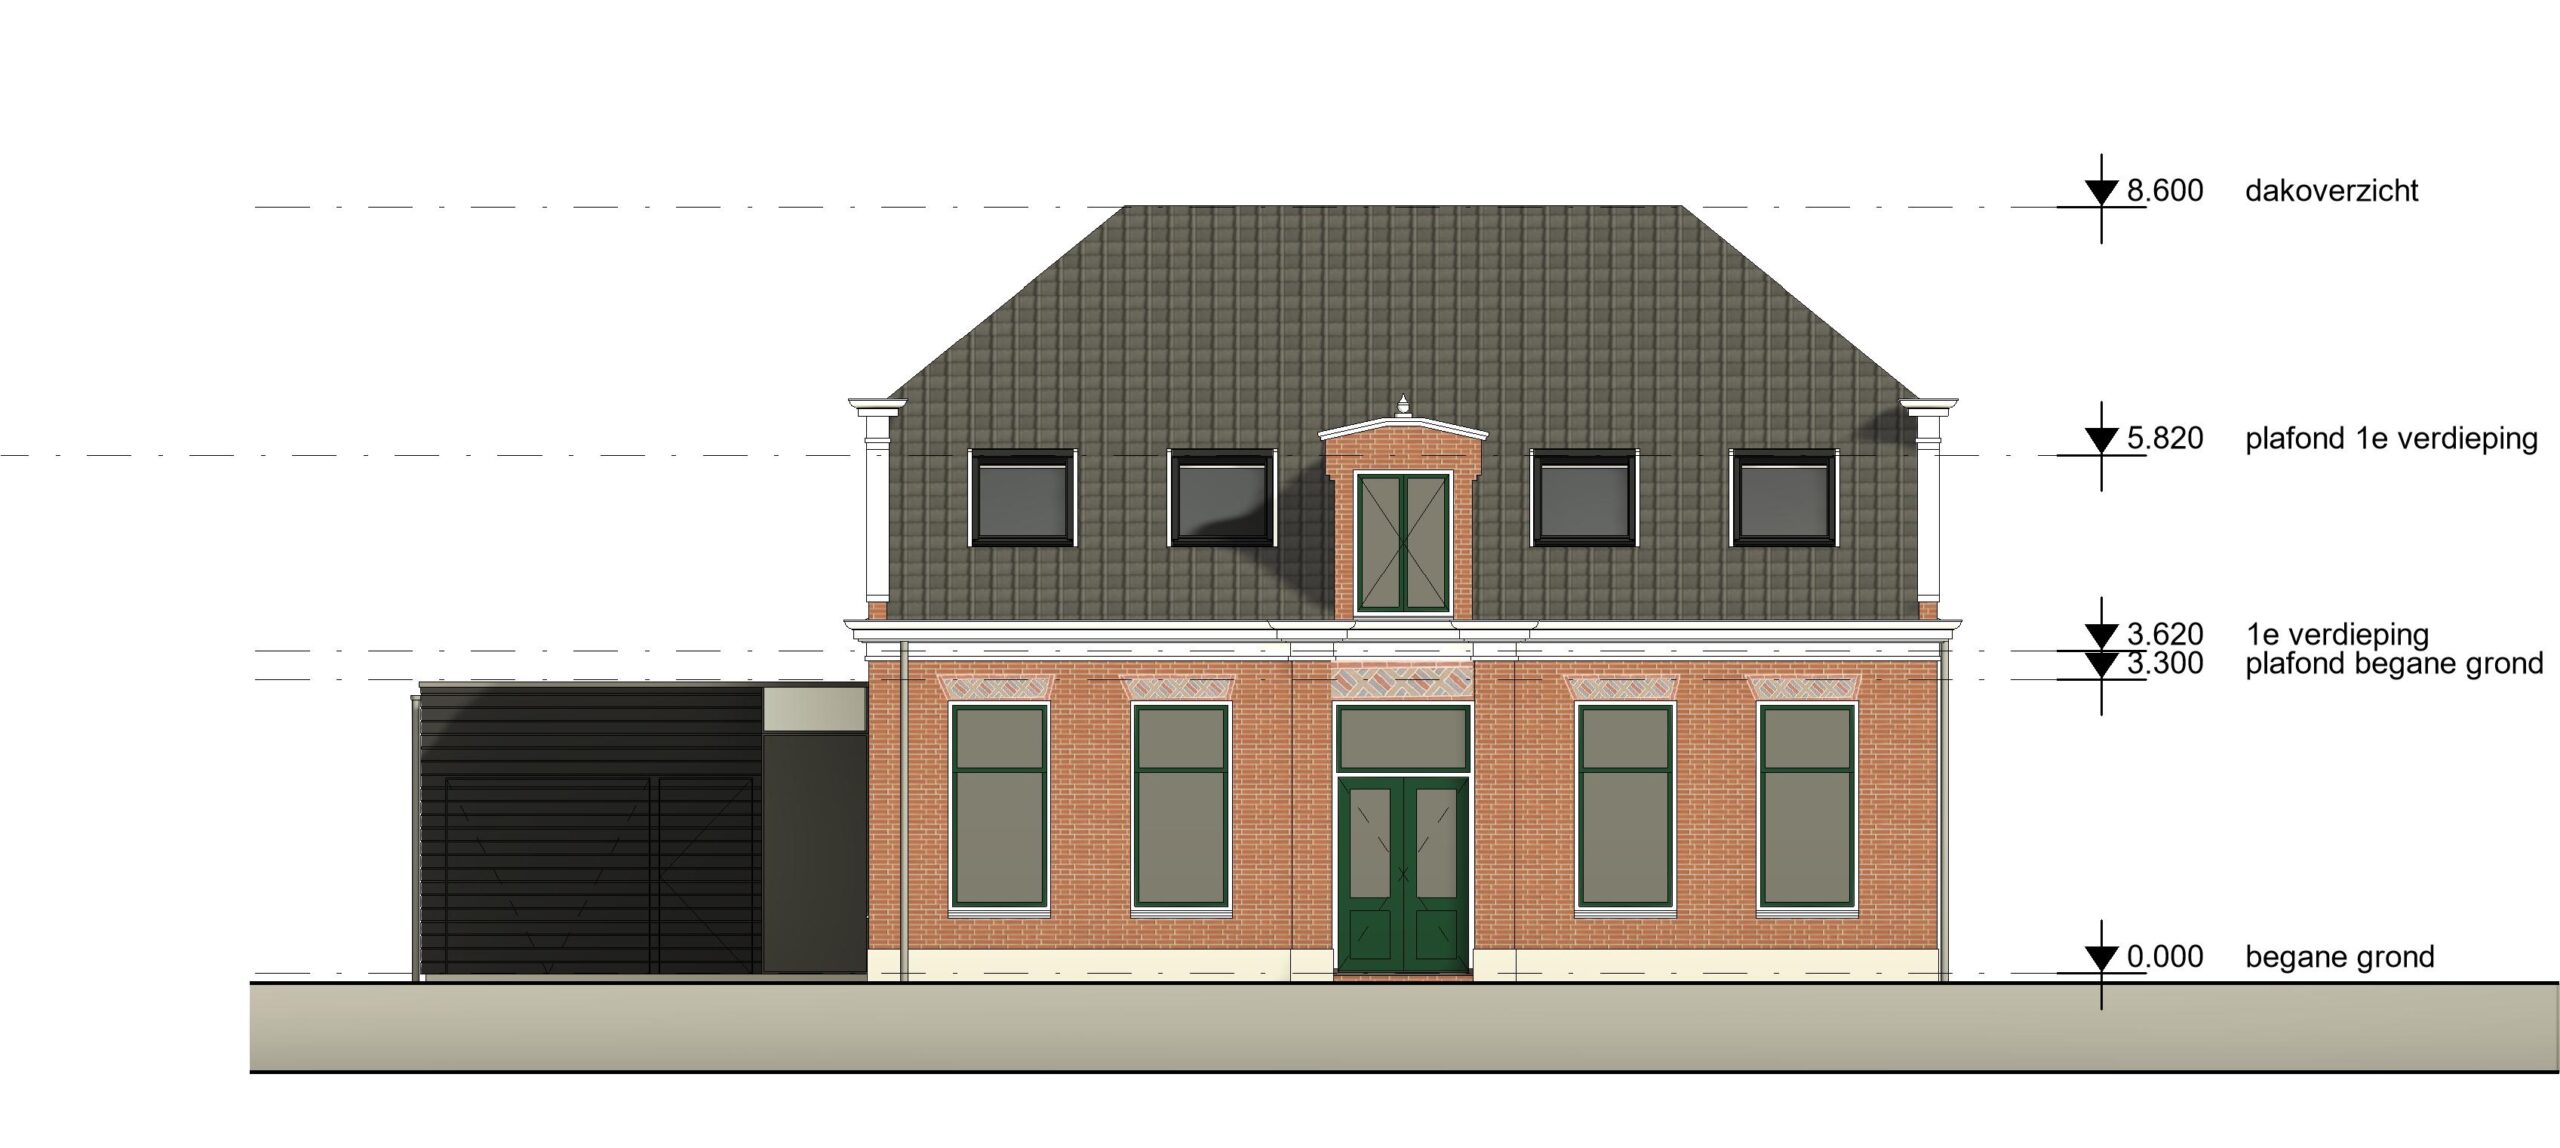 architect tekenbureau dakkapel dakraam lichtstraat monument roelofarendsveenbouwtekening gevel voor